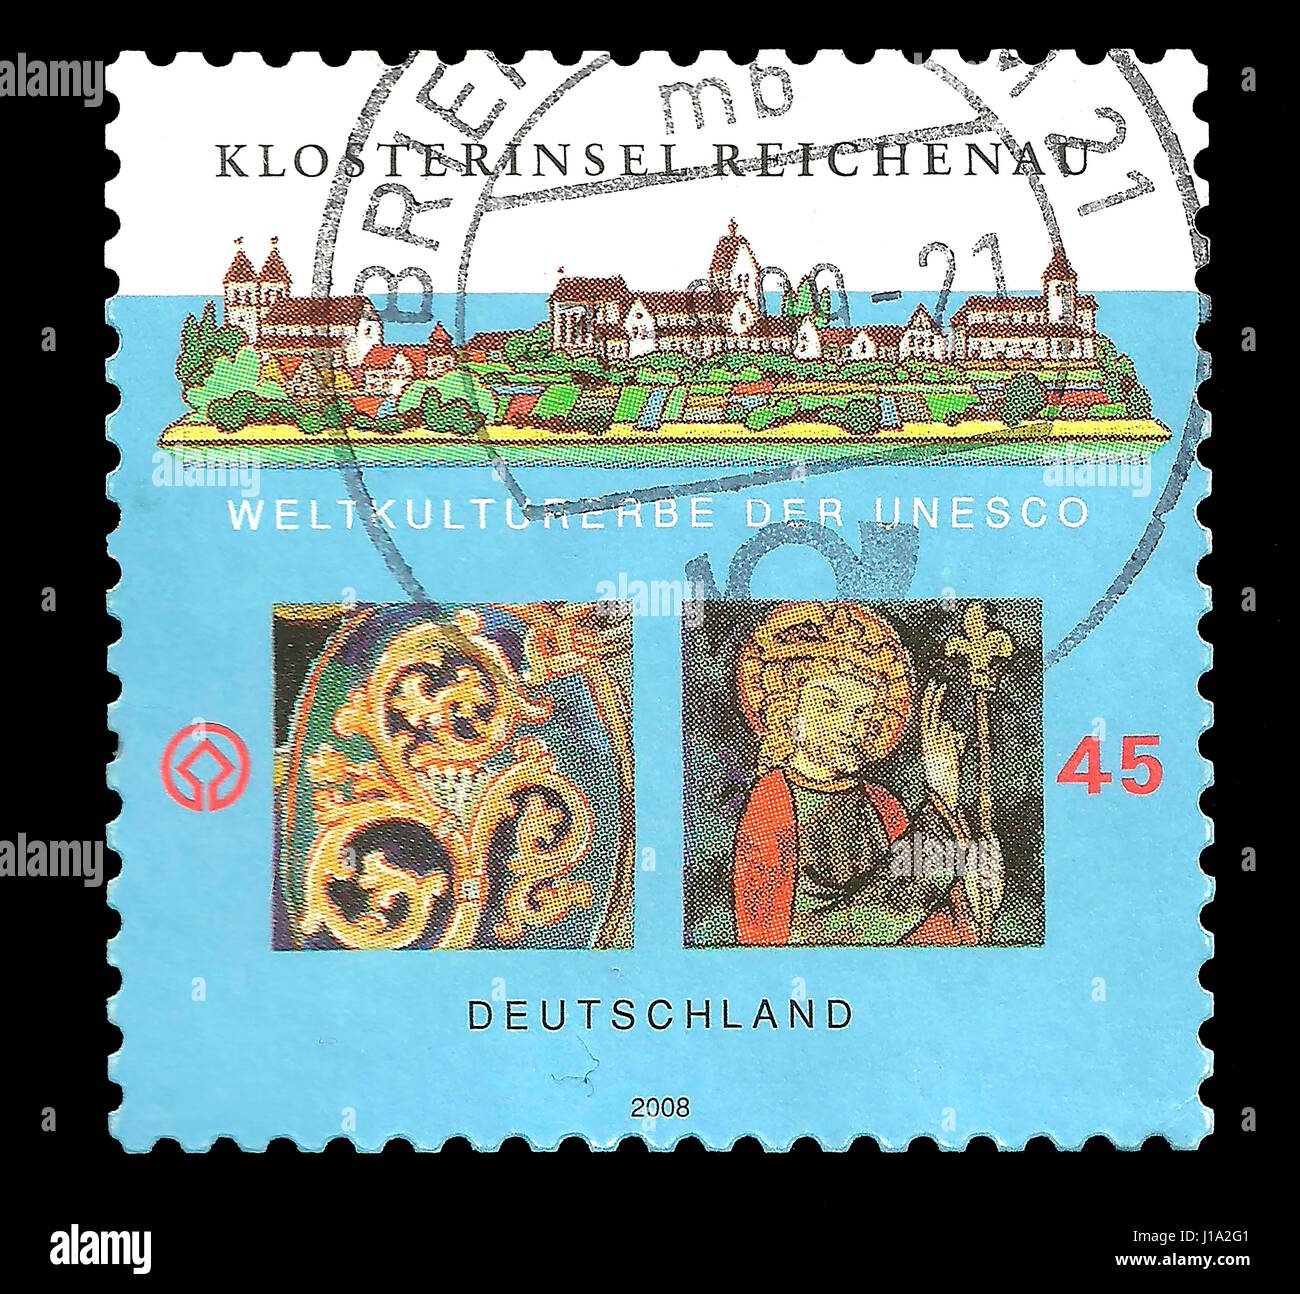 Briefmarke: Deutschland 2008, Weltkulturerbe der Unesco – Klosterinsel Reichenau Stockfoto